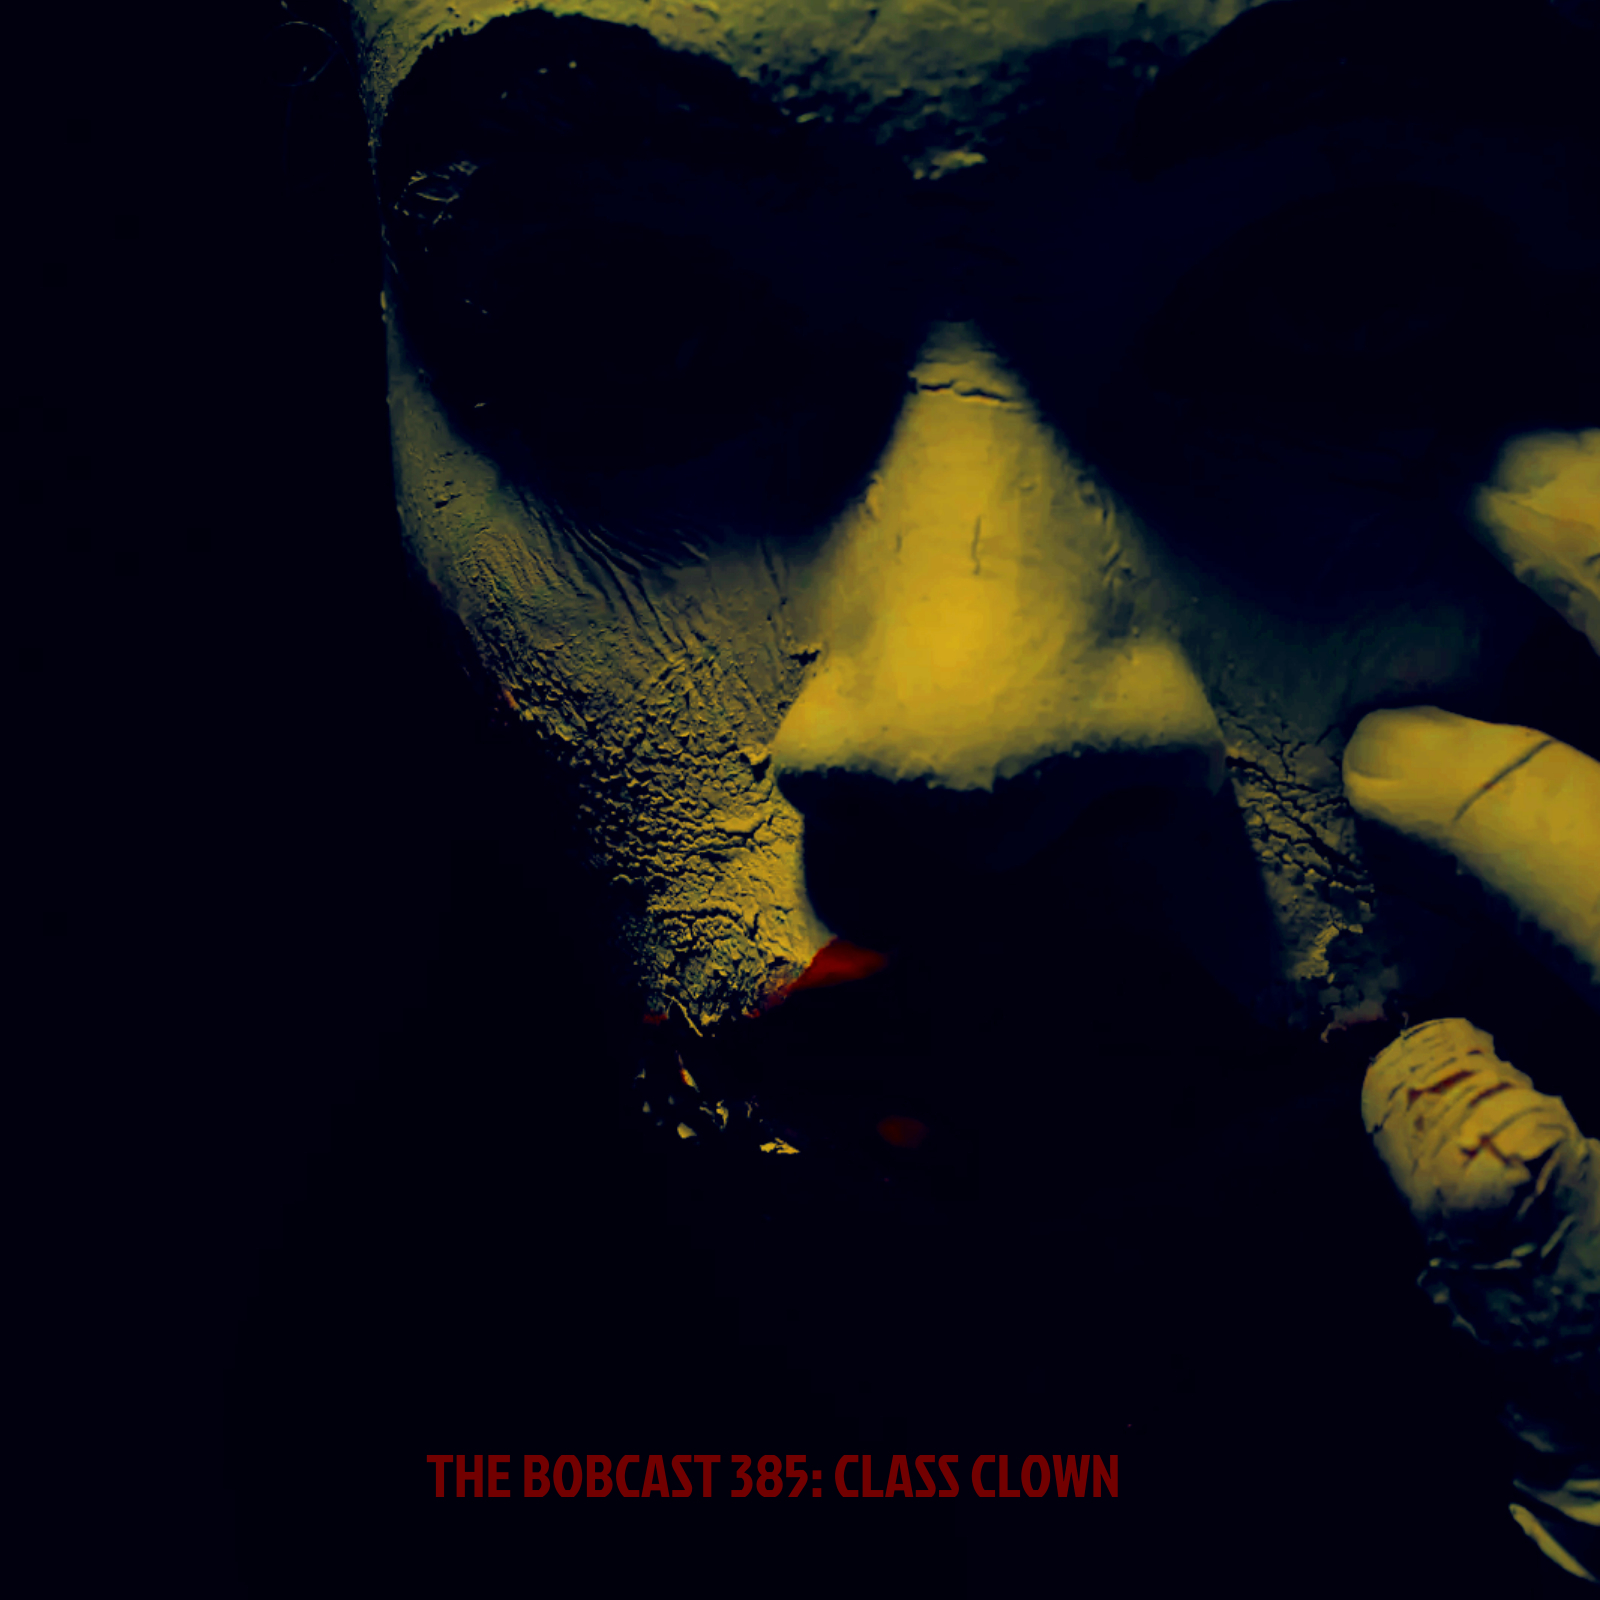 Joker_Clown_Mask_Dark_CD_Cover_Art_-_Made_wit...